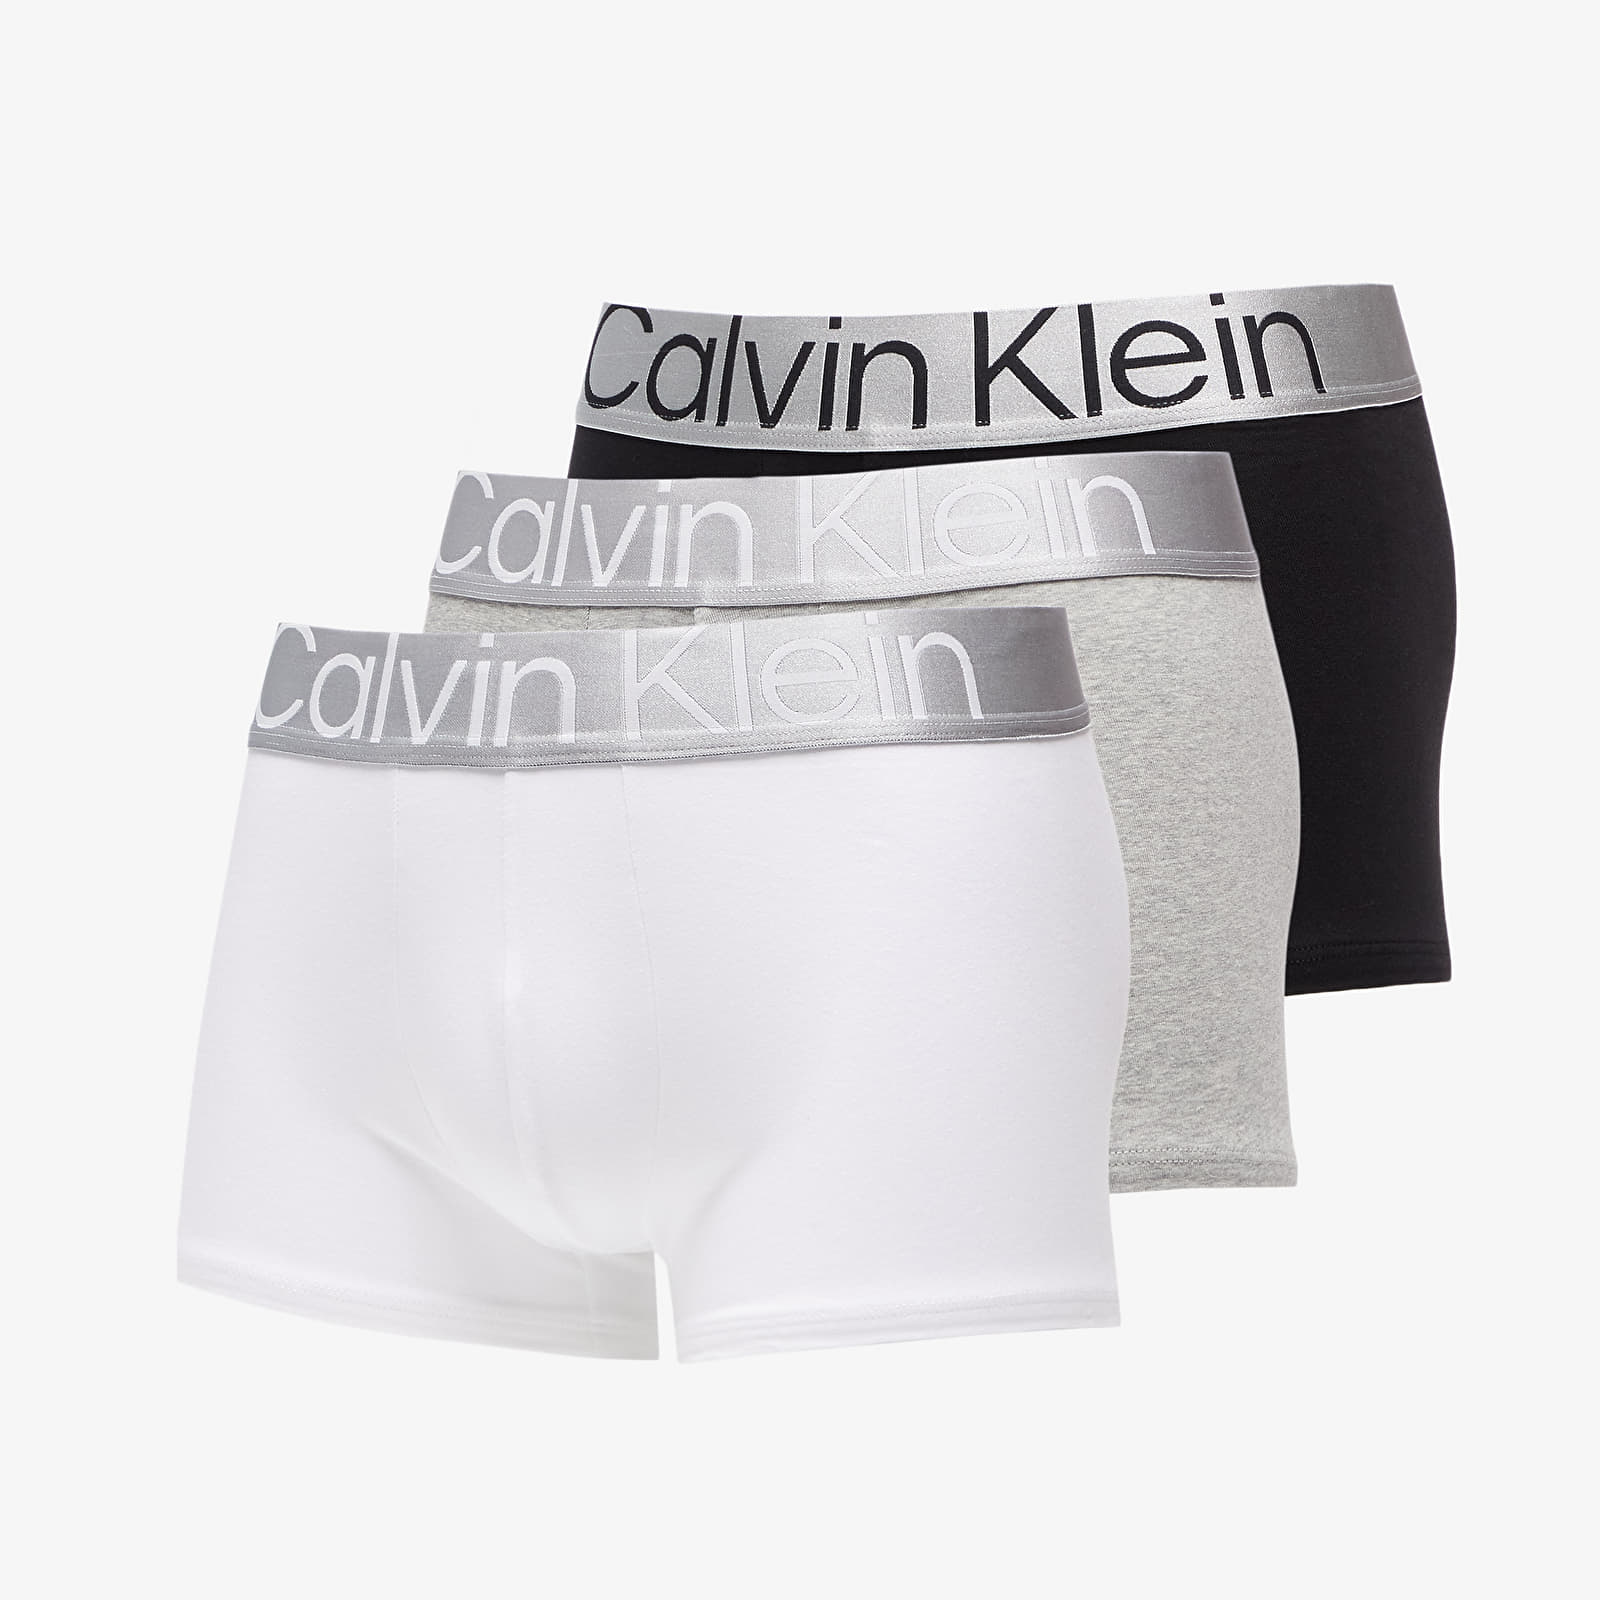 Trunks Calvin Klein Steel Cotton Trunk 3-Pack Black/ White/ Grey Heather